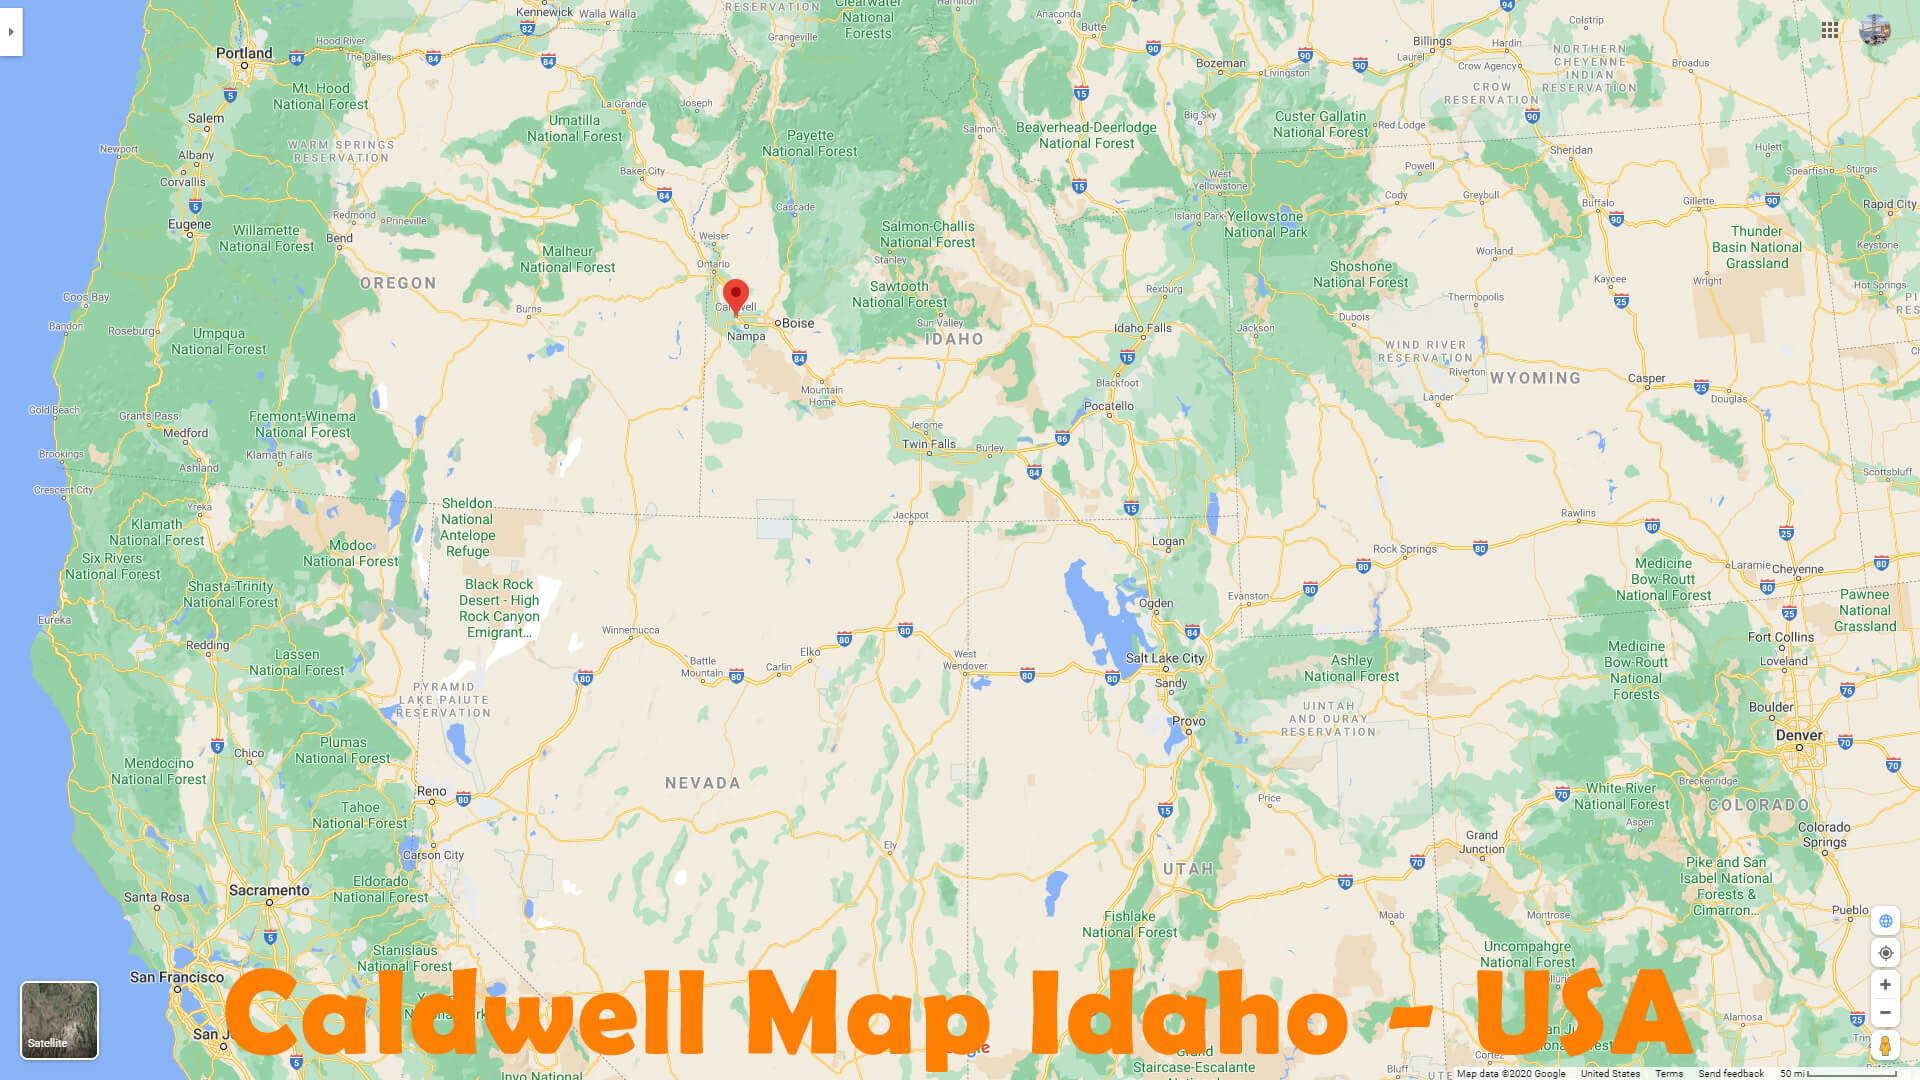 Caldwell Map Idaho   USA